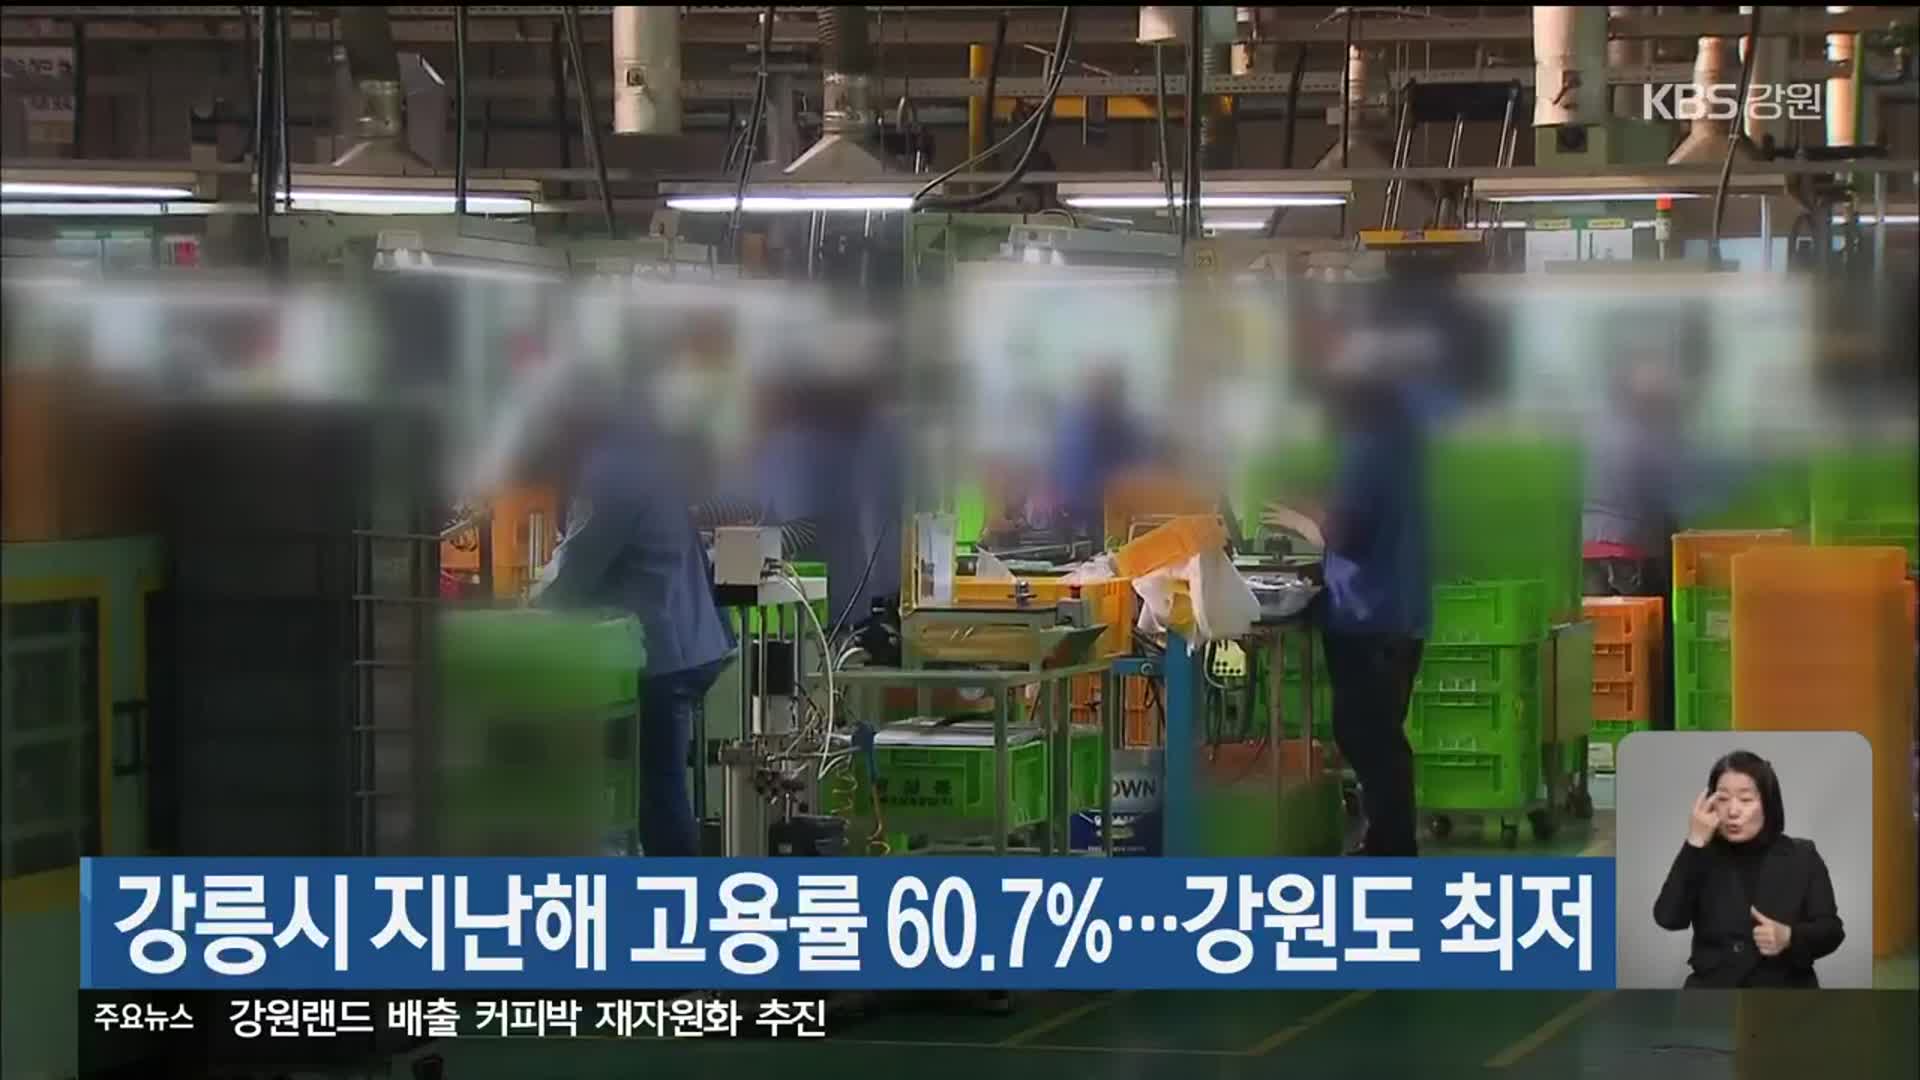 강릉시 지난해 고용률 60.7%…강원도 최저